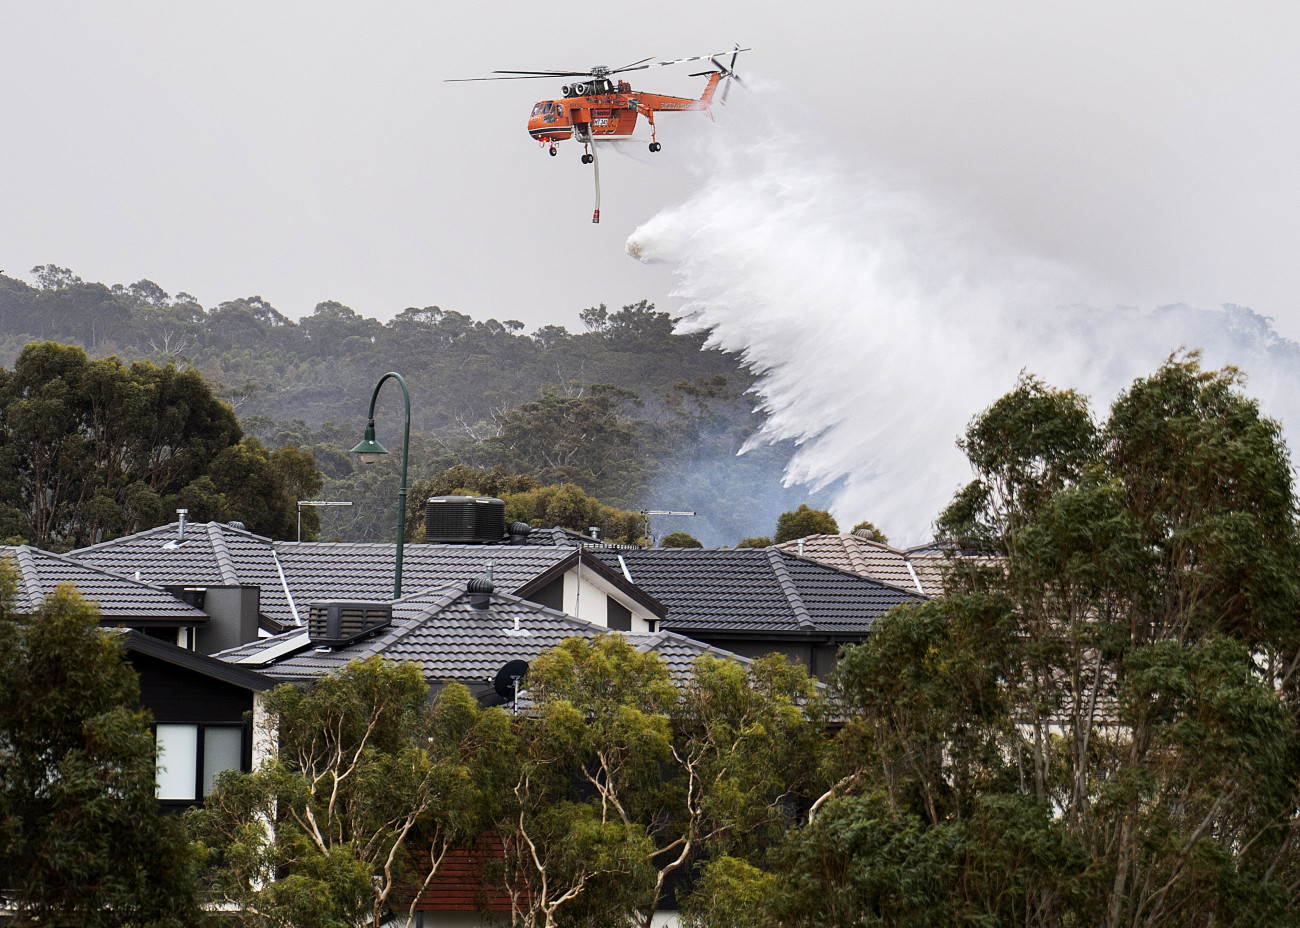 Bundoora, 2019. december 30.
Helikopterről ledobott vízzel próbálják oltani a Victoria ausztrál szövetségi állambeli Bundoora közelében tomboló erdőtűzet 2019. december 30-án. John Barilaro, az ausztráliai Új-Dél-Wales állam miniszterelnök-helyettese a szilveszteri tűzijáték lemondására szólította fel Sydney városát. Eddig több mint 270 ezren írták alá a tűzijáték lemondását sürgető petíciót, amely egyúttal felszólítja a város vezetőit, hogy az erre szánt összeggel inkább a bozóttüzek károsultjait támogassa. Ausztrália keleti részében október közepe óta tombolnak bozót- és erdőtüzek.
MTI/AP/AAP/Ellen Smith